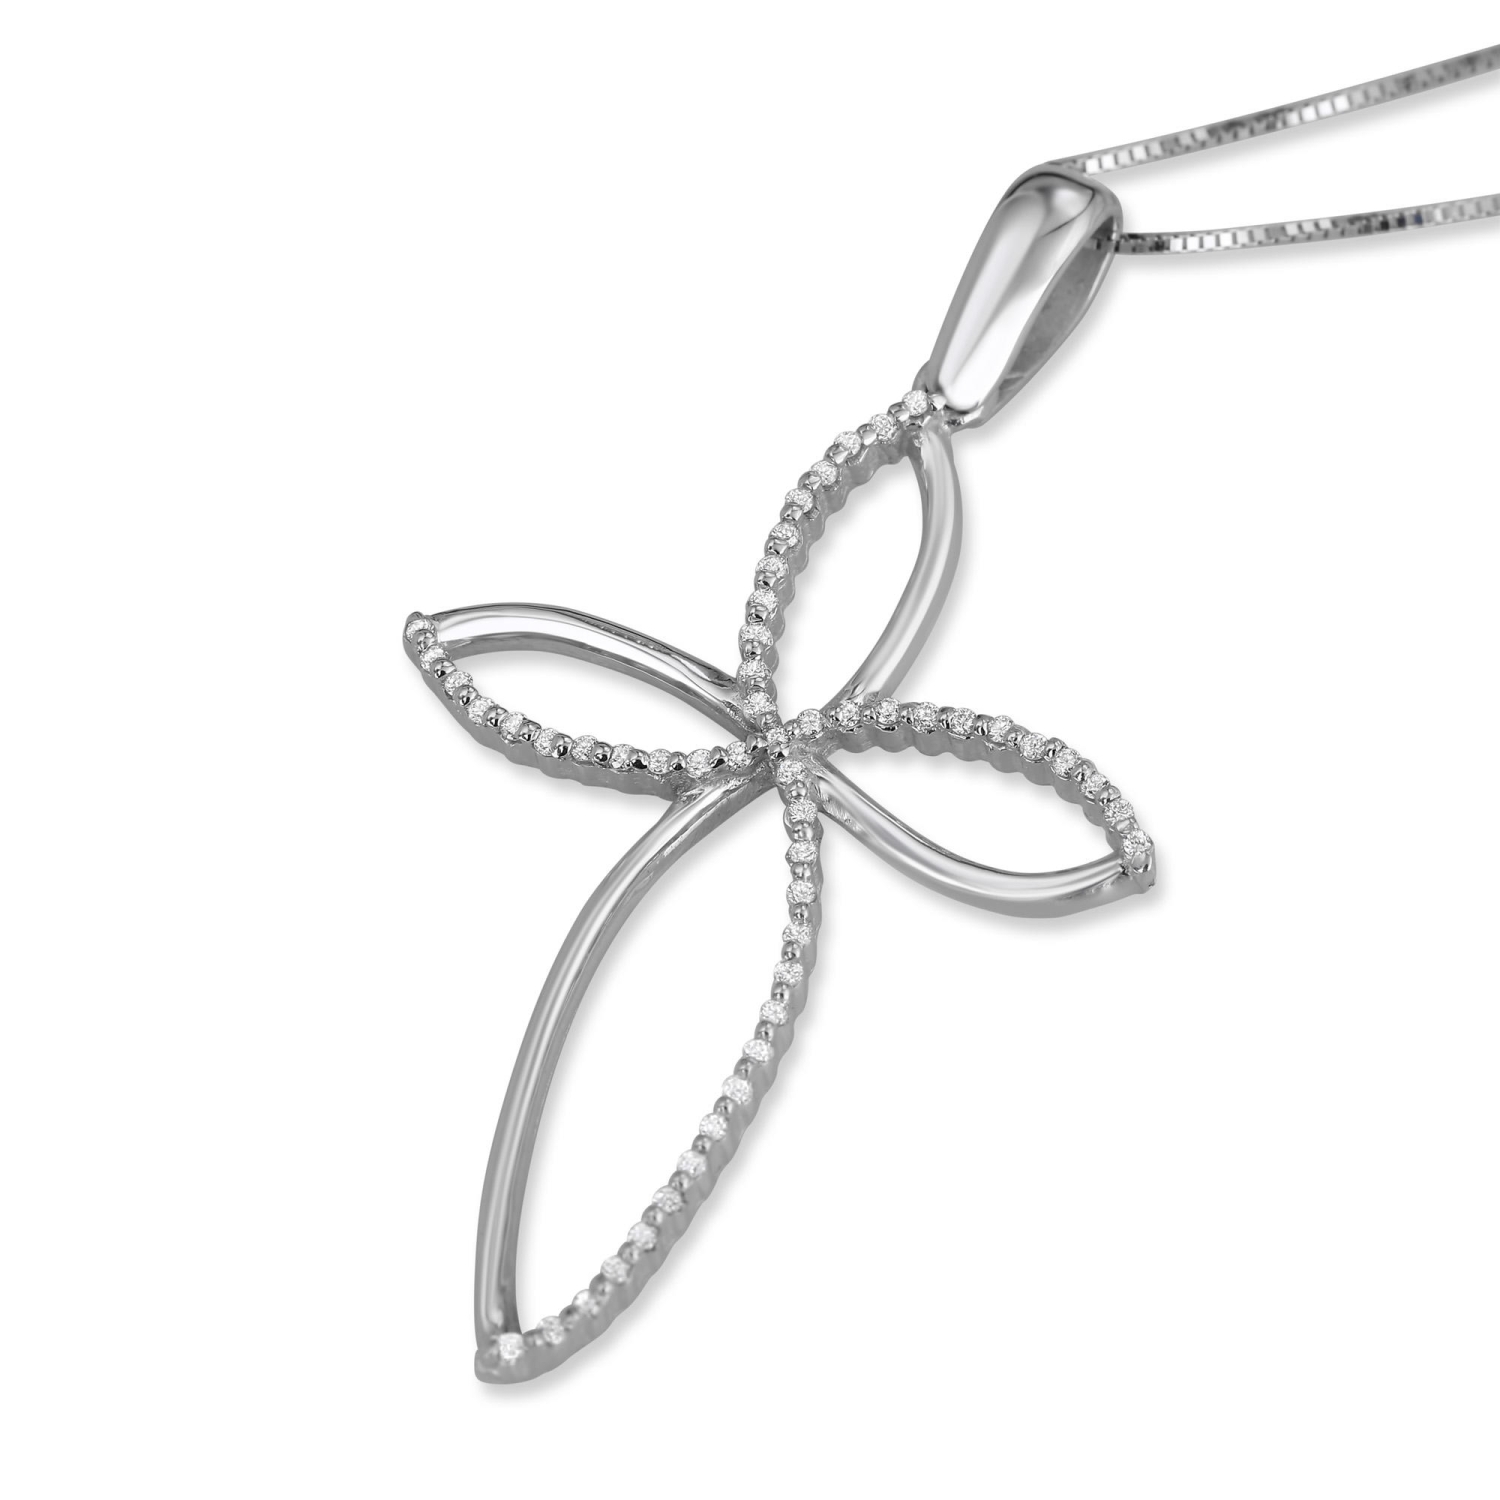 14k White Gold and Diamond Elegant ‘Flower’ Cross Necklace - 1